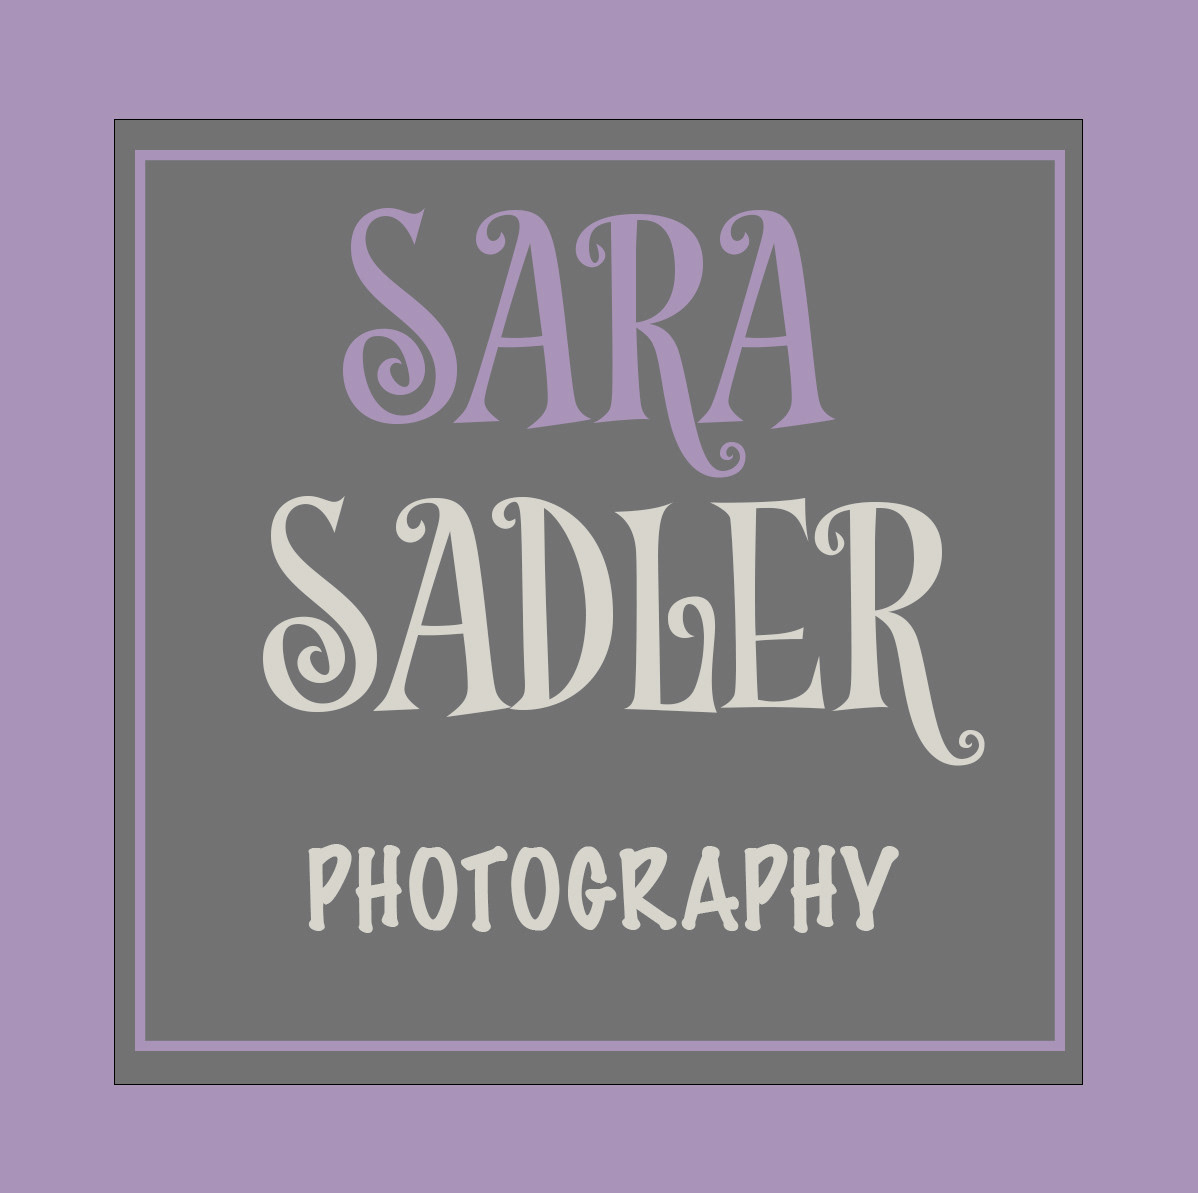 Sara Sadler